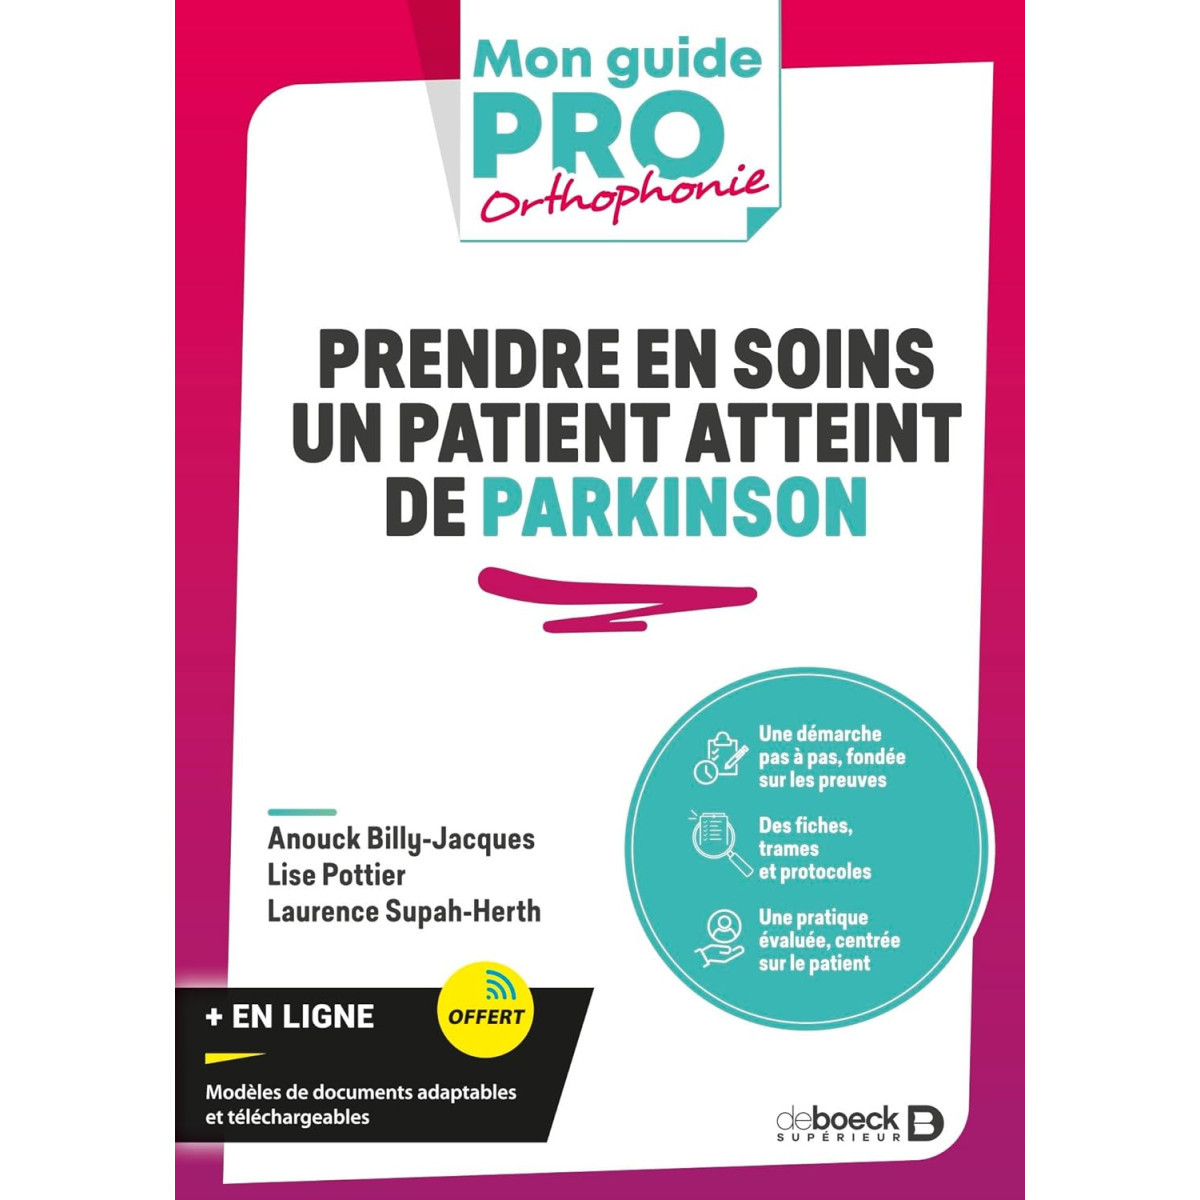 Prendre en soins un patient atteint de Parkinson